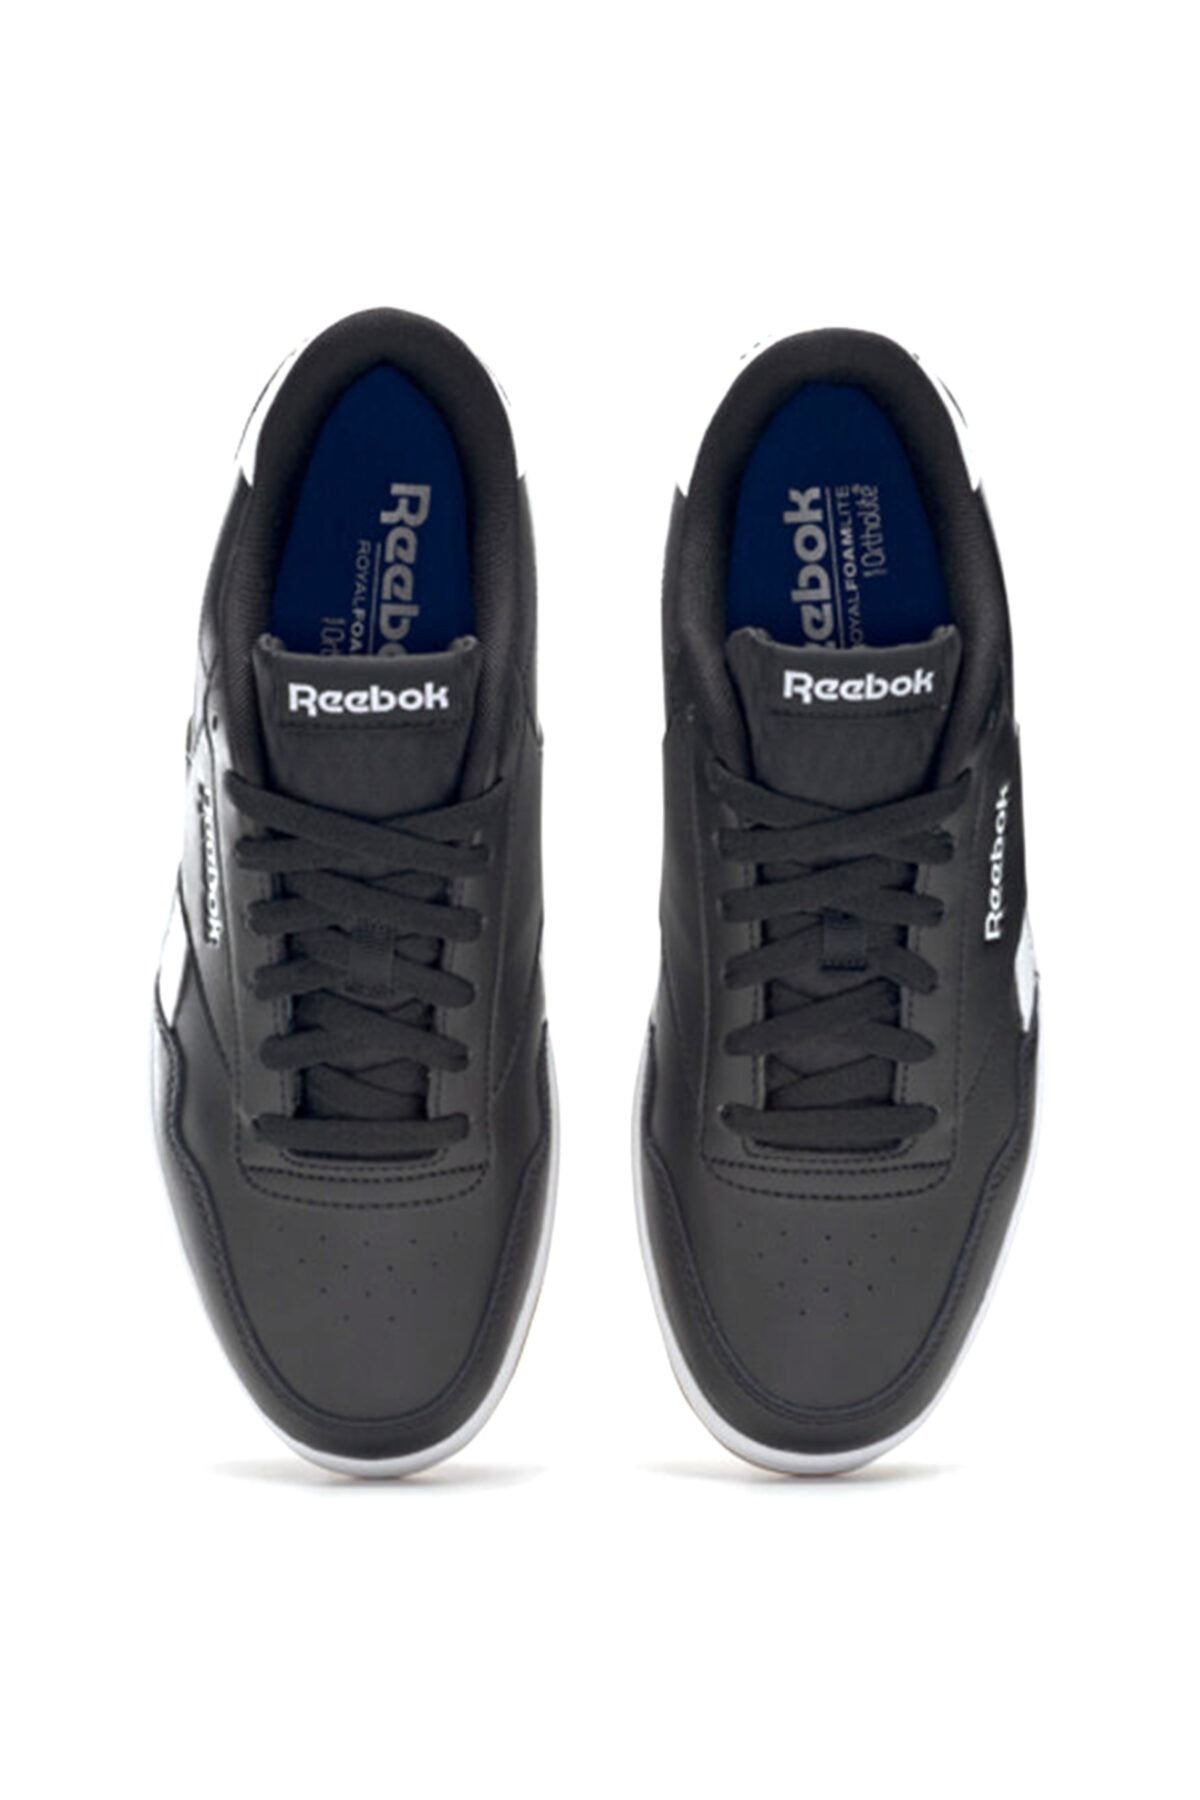 Reebok Reebok Royal Techque T کفش ورزشی مردانه سفید رنگ 100351421